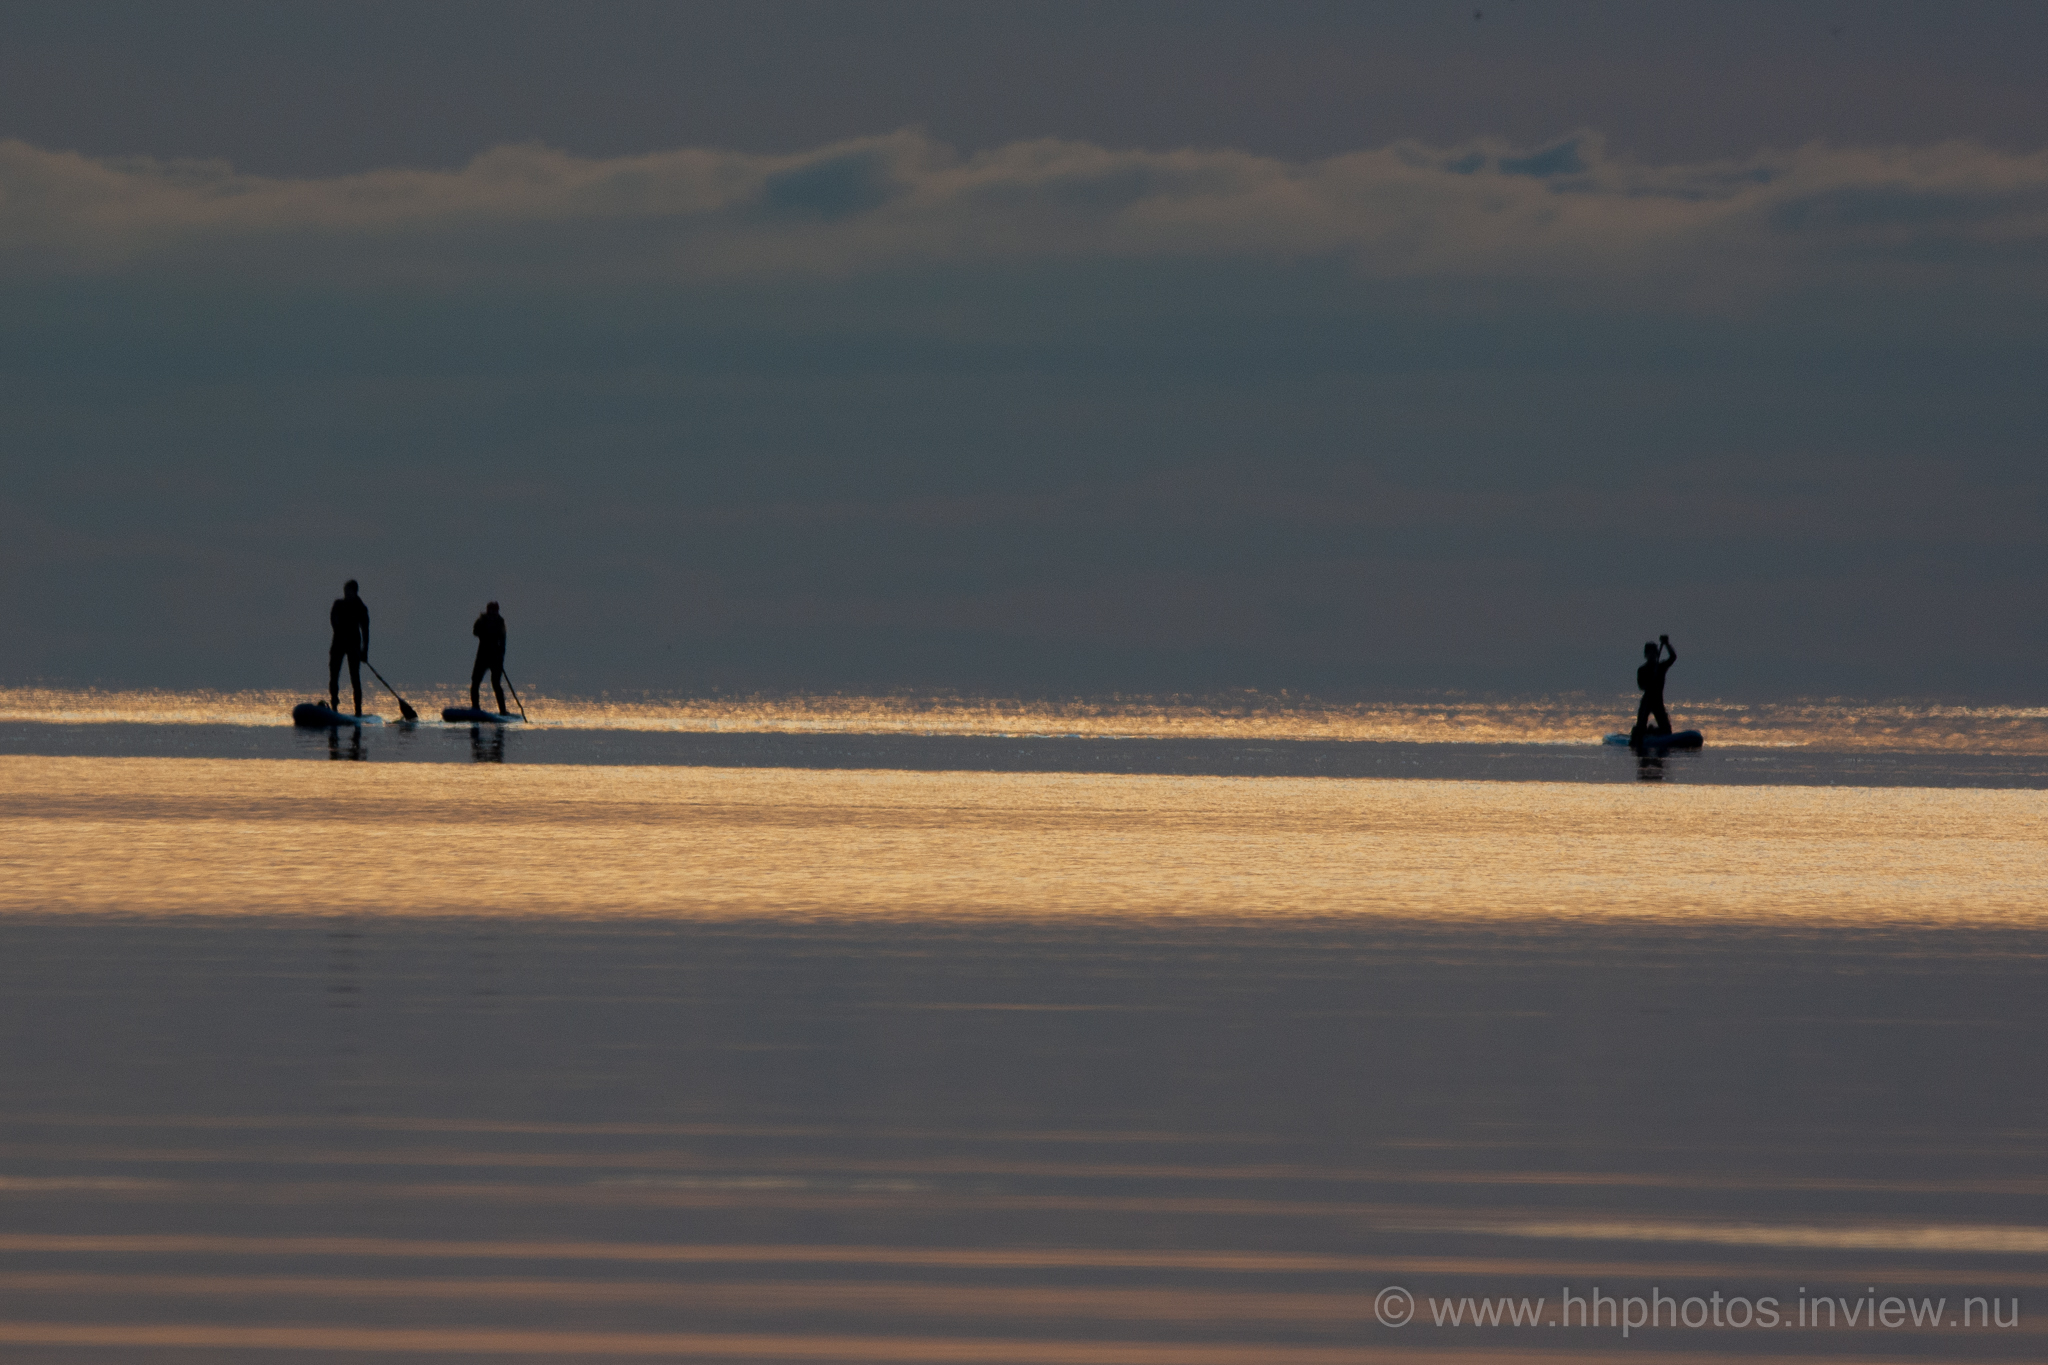 Paddelbrädåkare kommer in från havet i Askimsviken / Paddel surfers arriving from the sea at Askim Bay